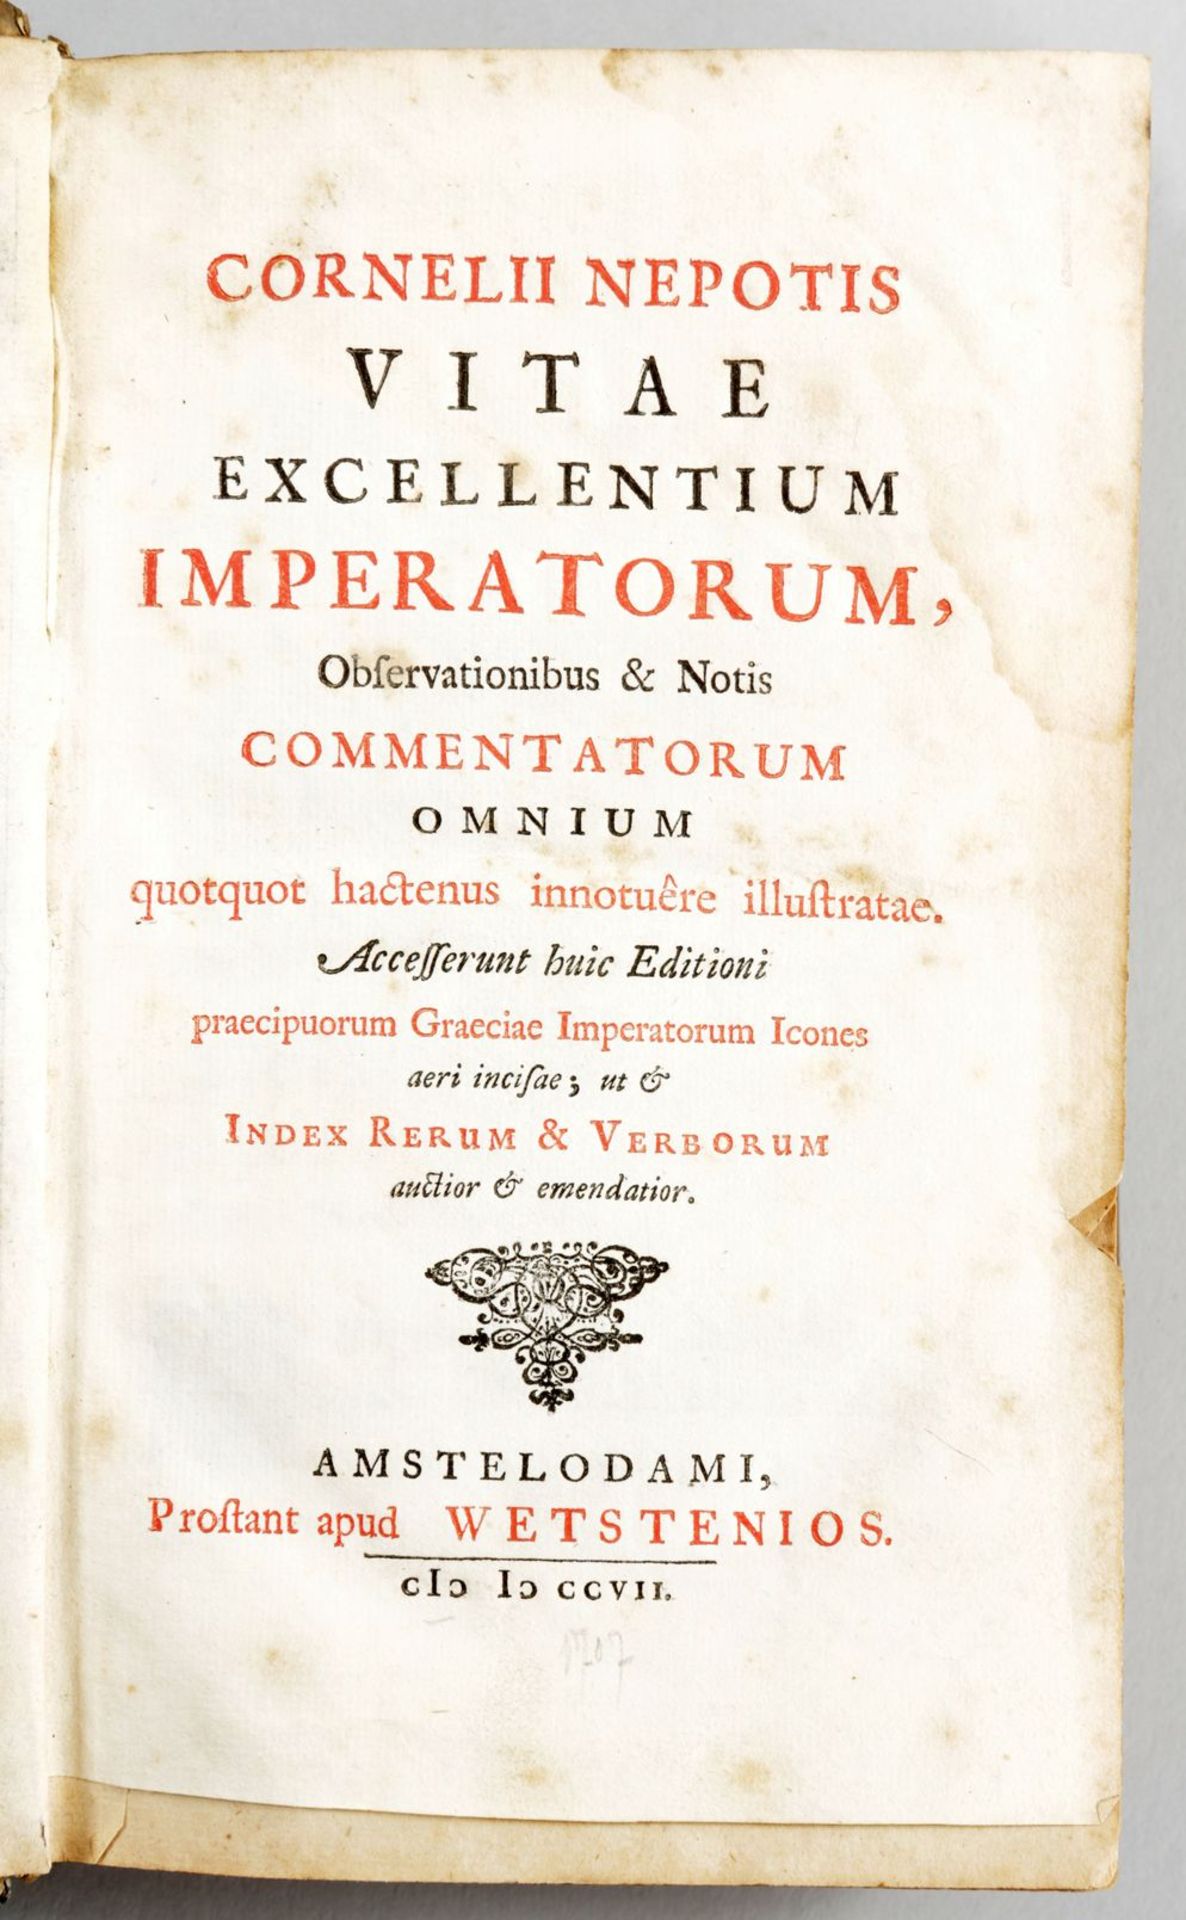 Vitae Excellentium Imperatorum - Image 2 of 5